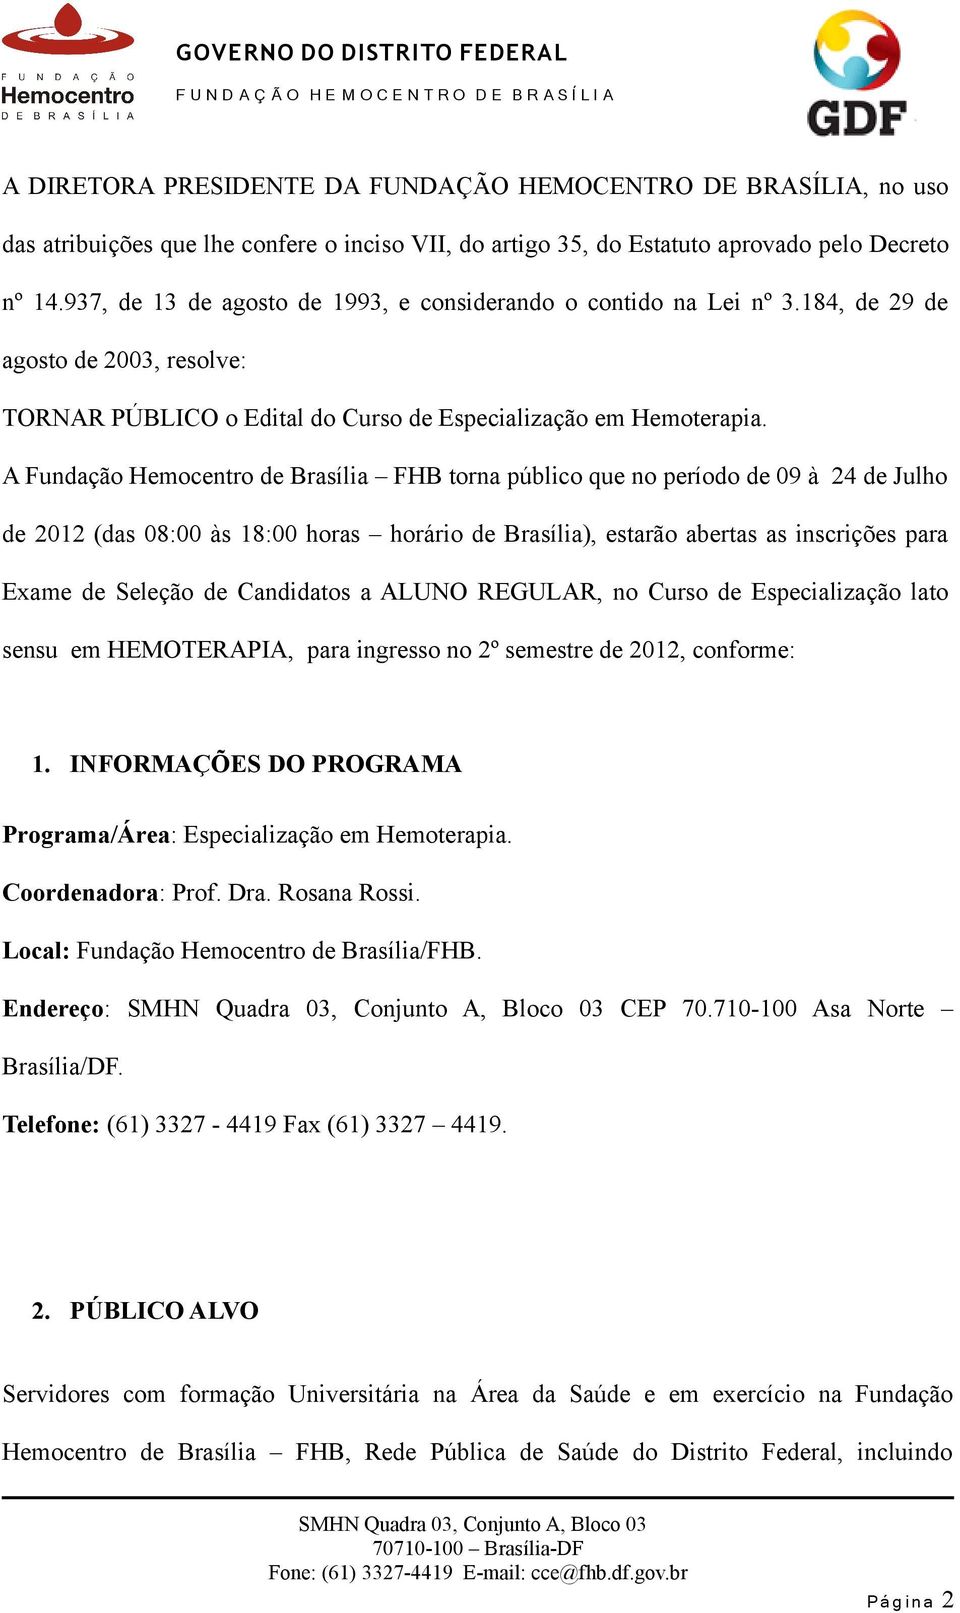 A Fundação Hemocentro de Brasília FHB torna público que no período de 09 à 24 de Julho de 2012 (das 08:00 às 18:00 horas horário de Brasília), estarão abertas as inscrições para Exame de Seleção de